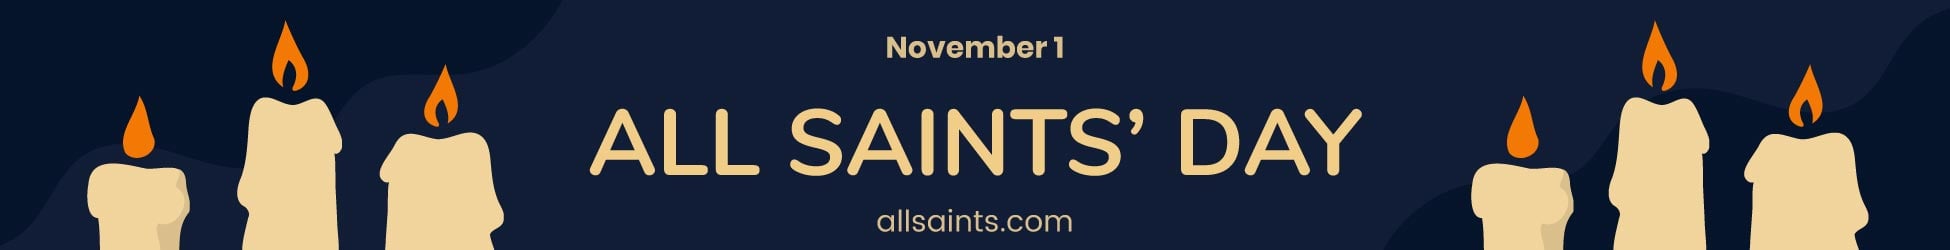 All Saints' Day Website Banner in Illustrator, PSD, EPS, SVG, JPG, PNG